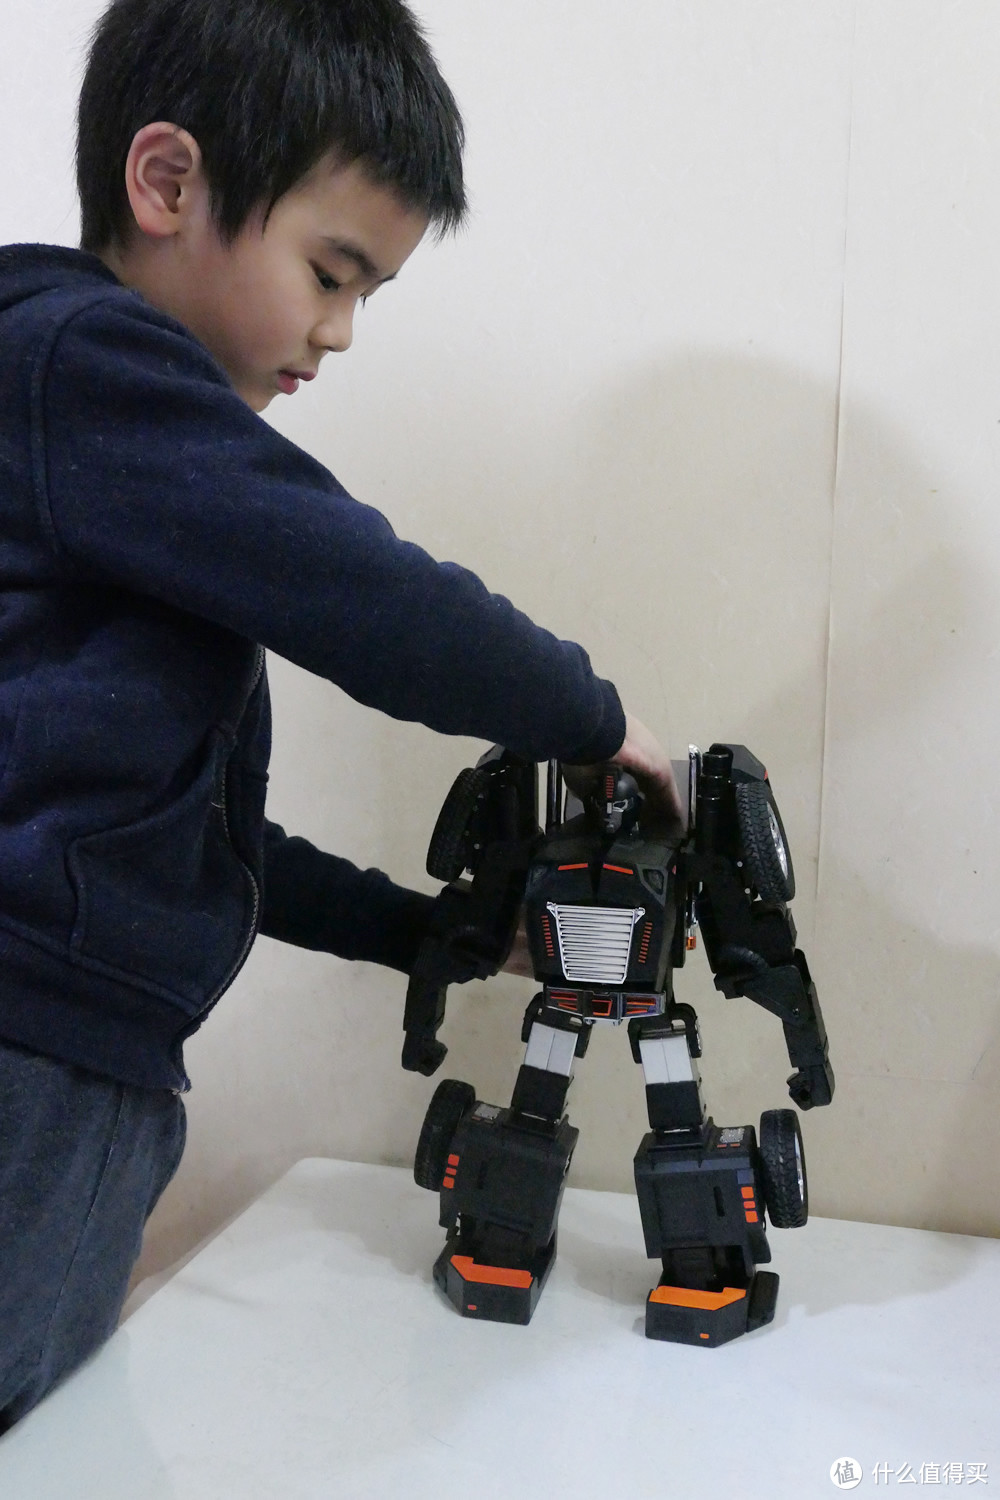 游戏编程两不误：让孩子爱不释手的星际特工T9机器人